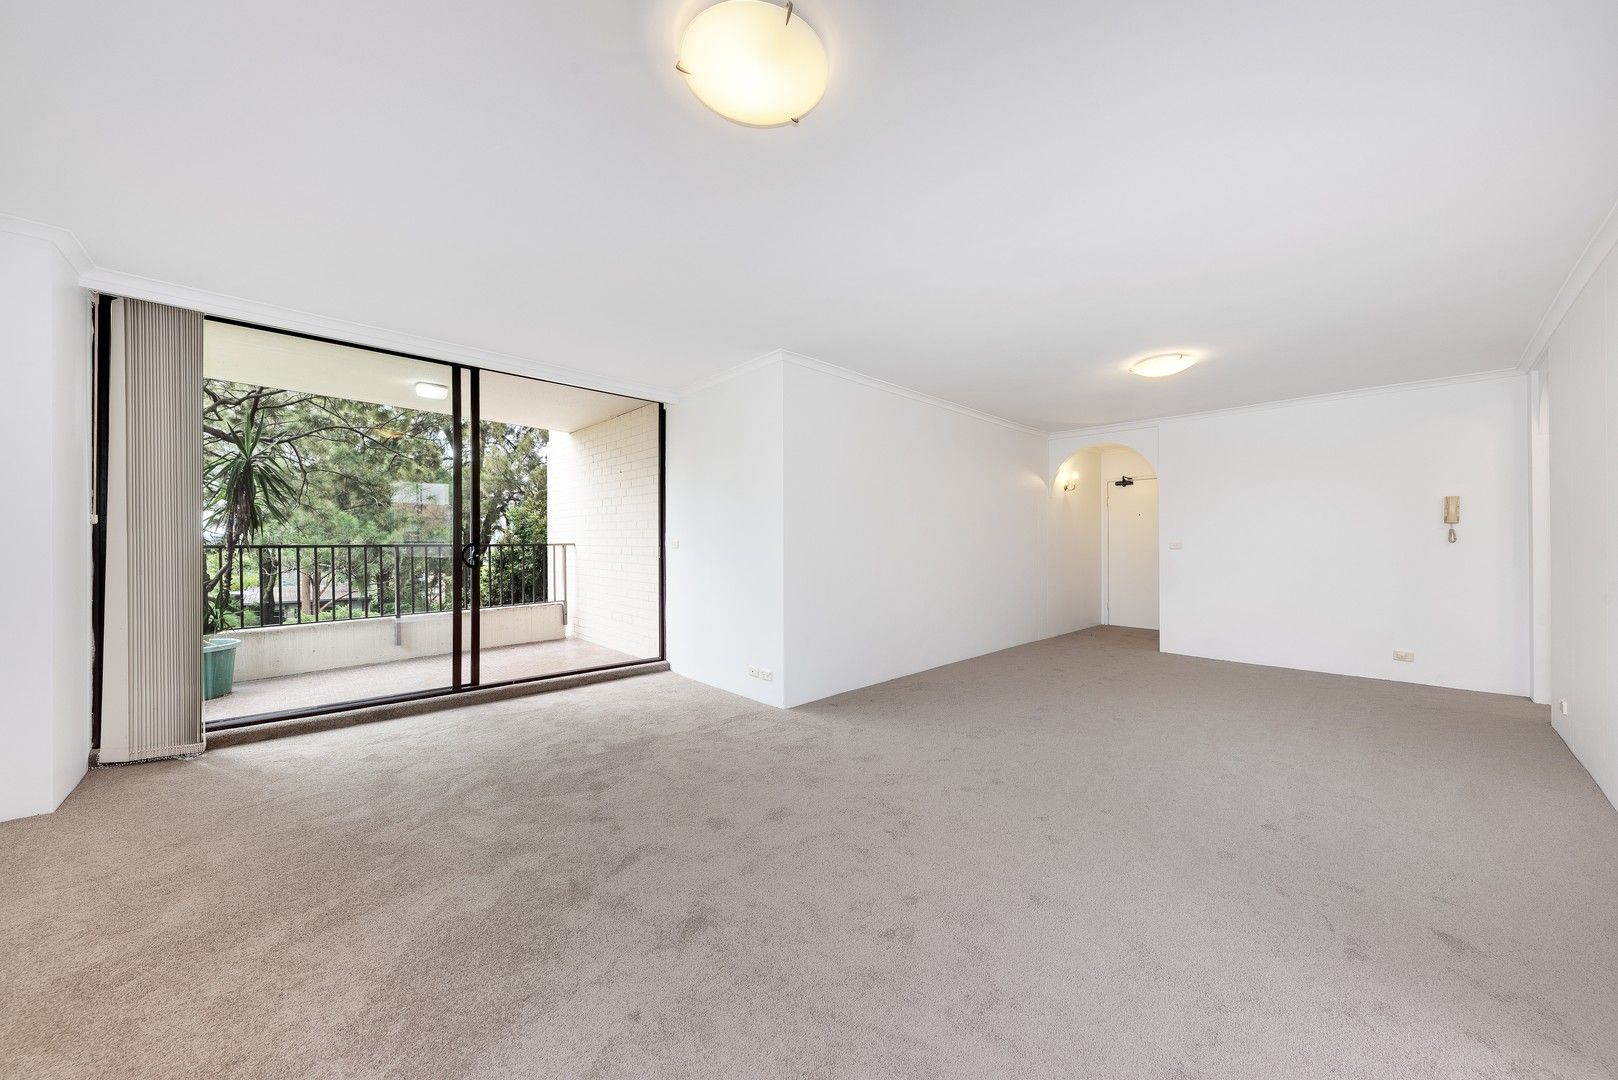 2 bedrooms Apartment / Unit / Flat in 44/81b Gerard St CREMORNE NSW, 2090